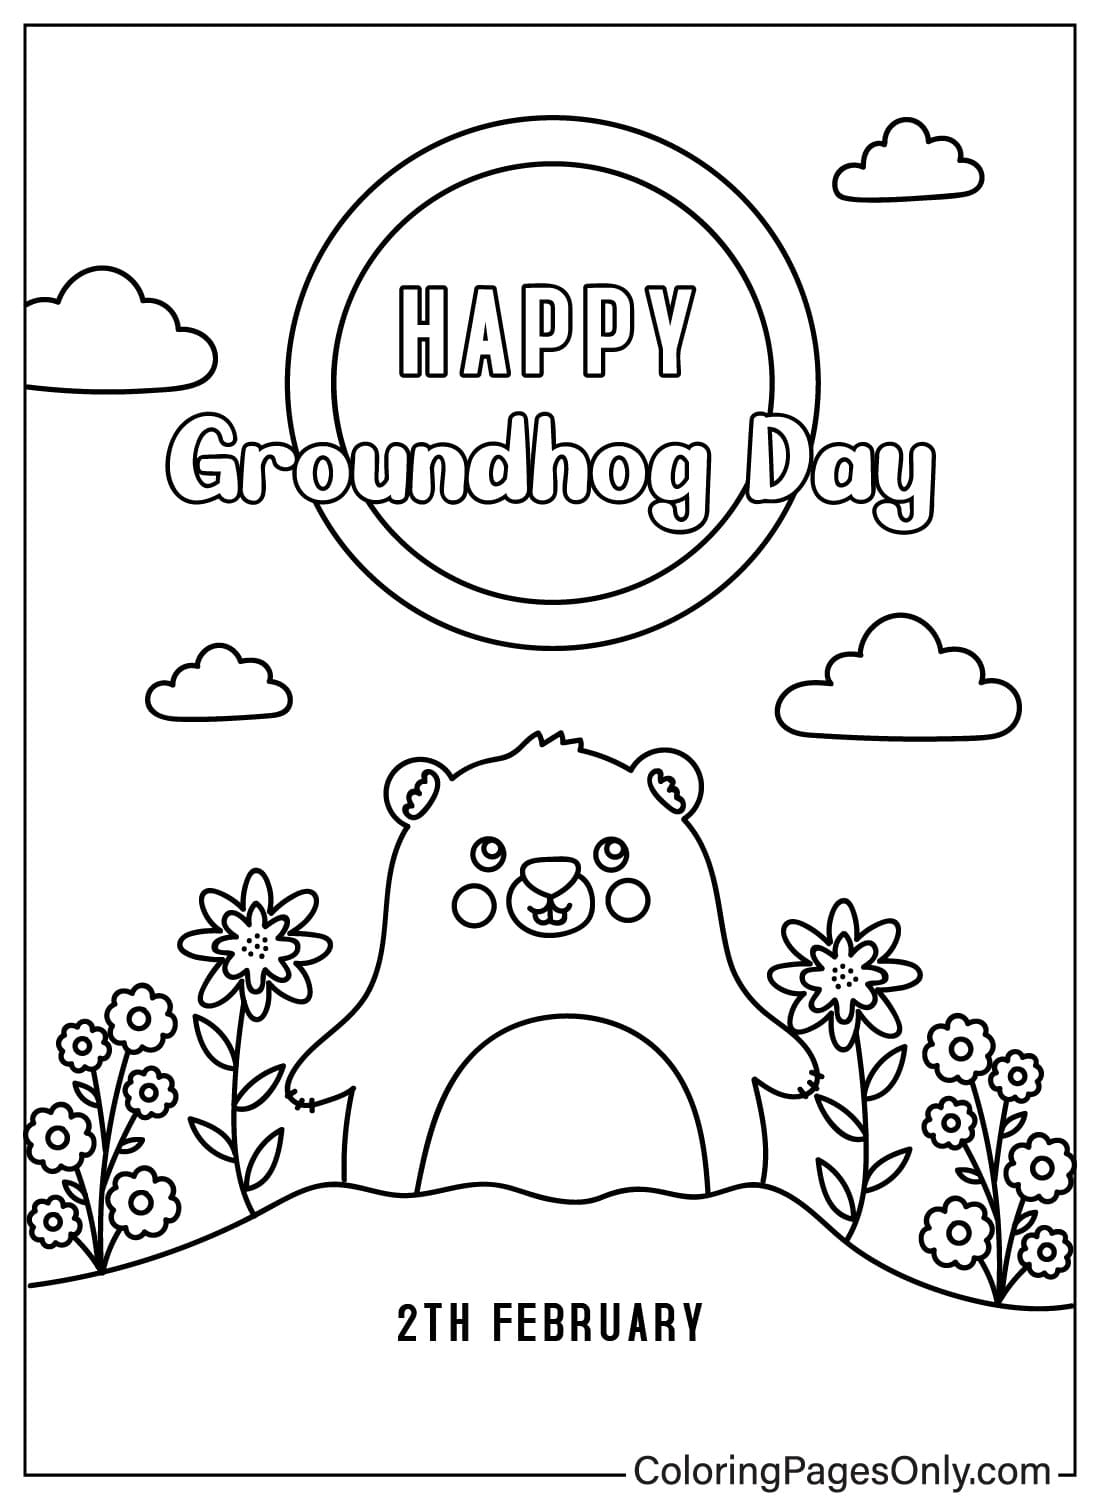 Coloriage gratuit de Groundhog Day de février de Groundhog Day